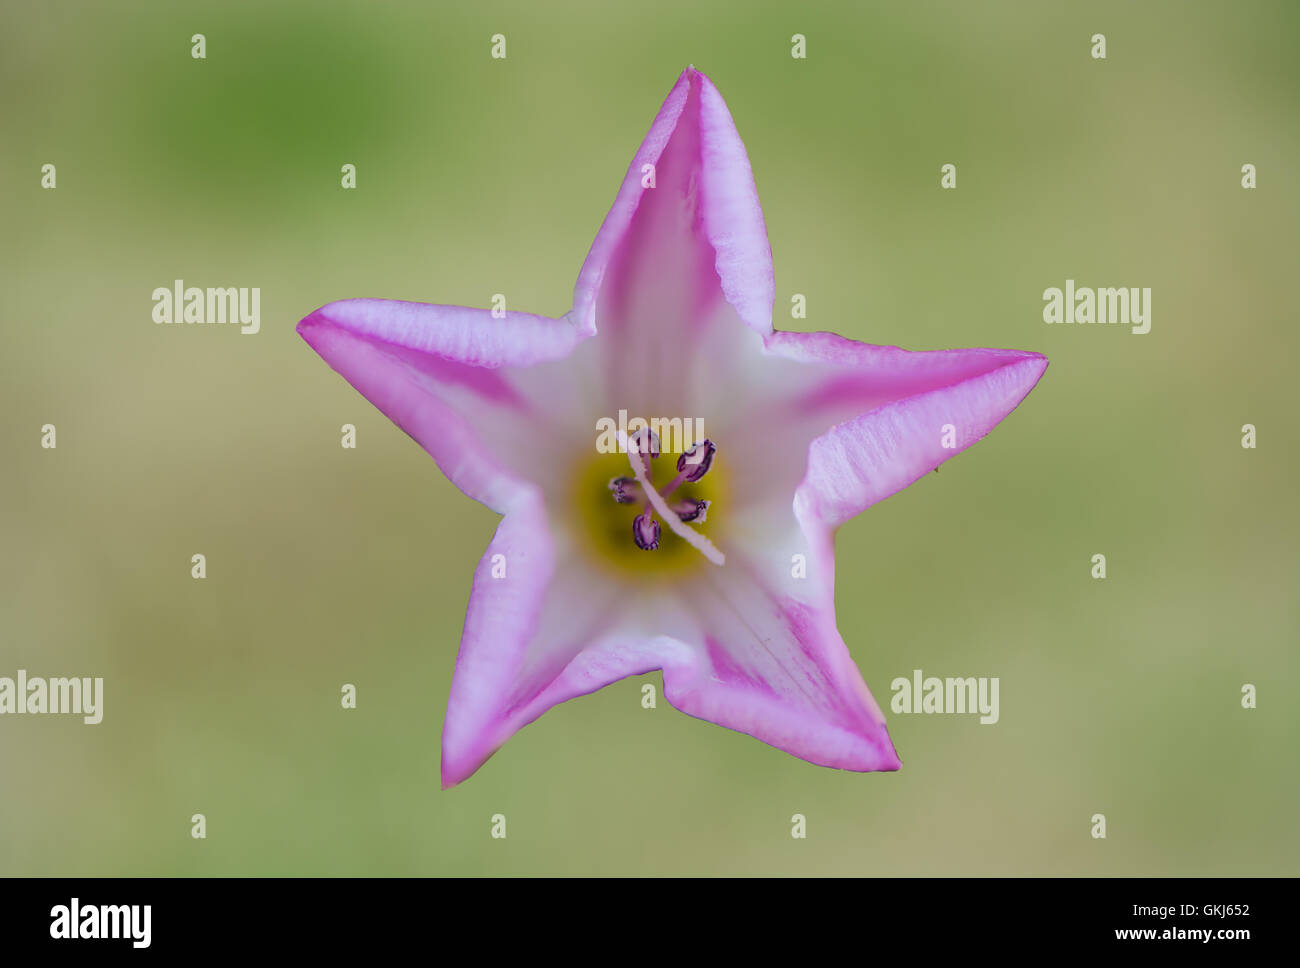 Feld Ackerwinde (Convolvulus Arvensis) isoliert. Sternförmige rosa und weiße Blume Pflanze und Unkraut in Familie Convolvulaceae Stockfoto